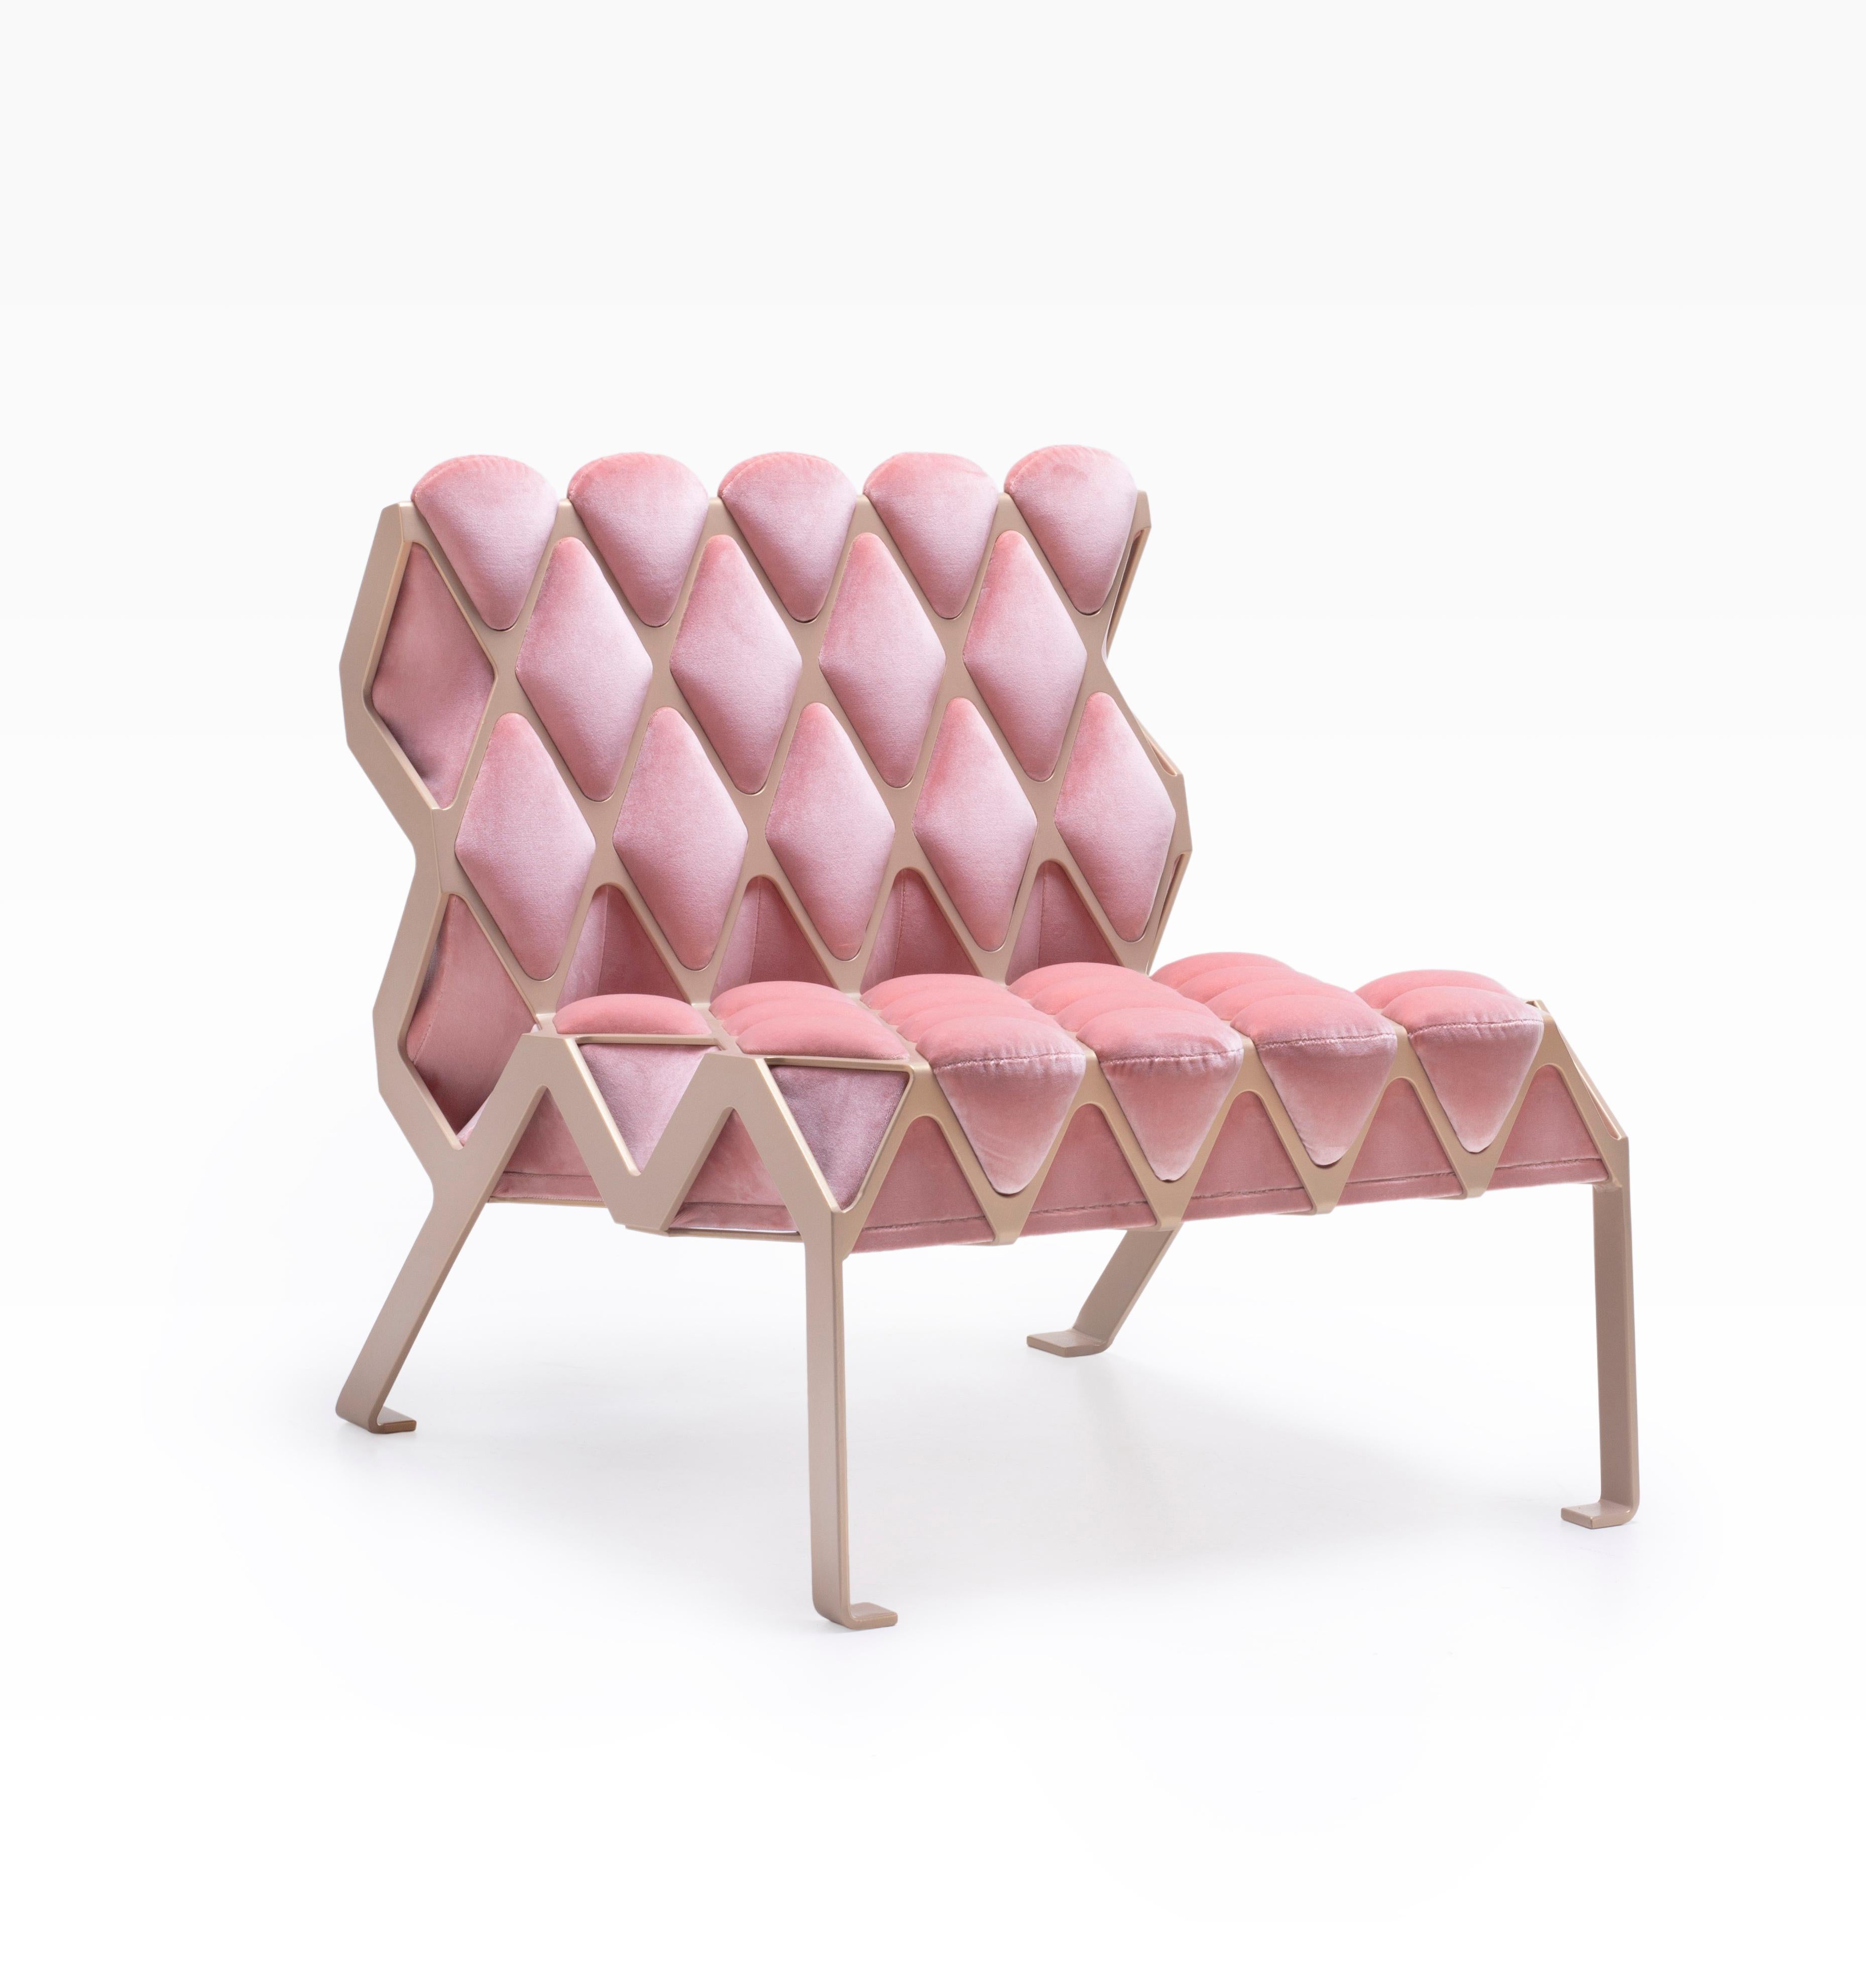 La chaise d'appoint Marie Antoinette Matrice est une chaise d'appoint conçue autour de l'empreinte. L'empreinte créée par l'interaction entre deux matériaux, l'un ductile et l'autre mou. Inspiration des photographies de Gabriele Basilico en tirage